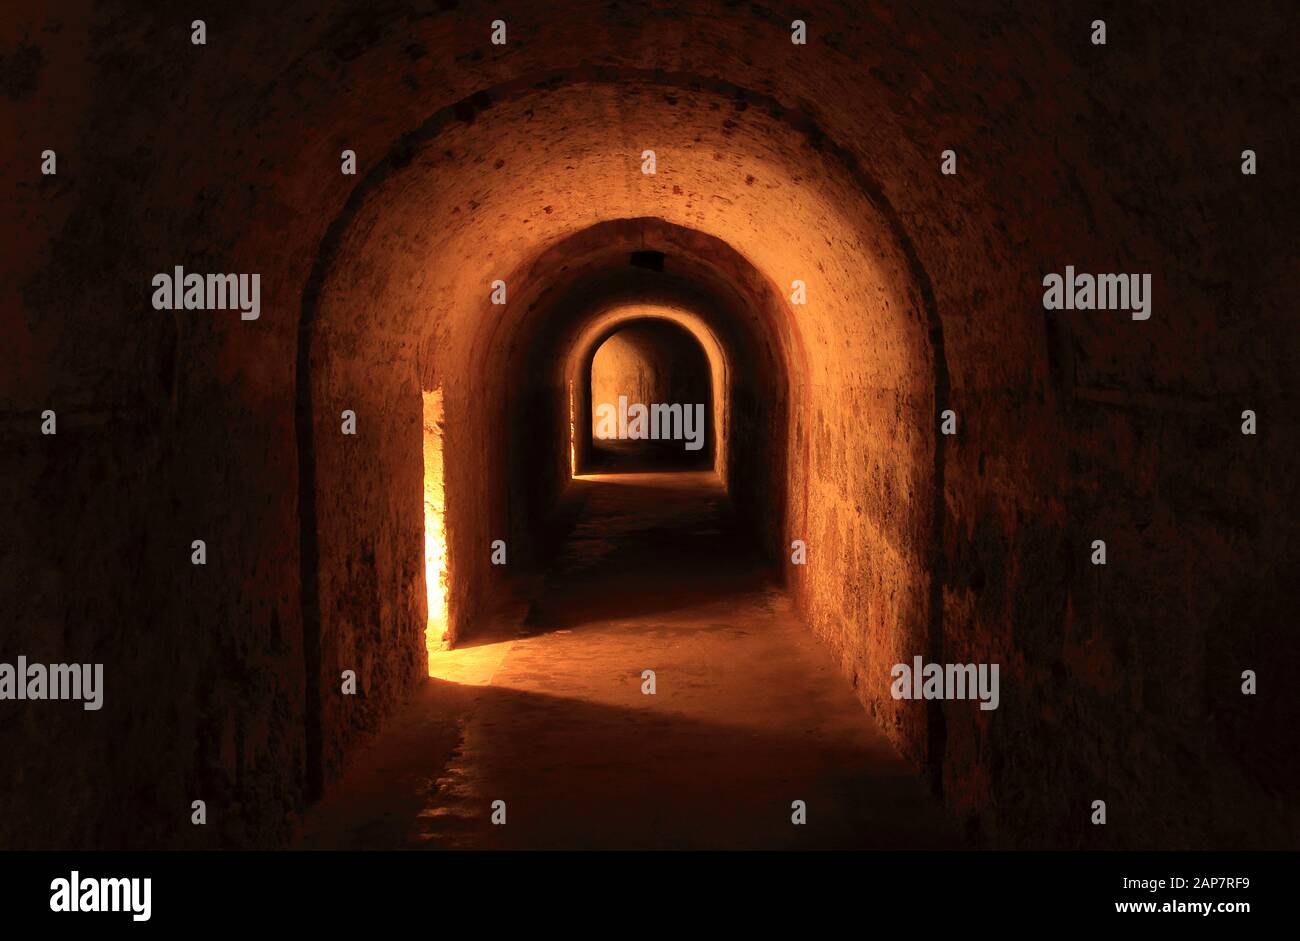 Geheime Passagen, dunkle Tunnel und düstere Dungeons gibt es in Castillo San Cristobal, einer ausgedehnten spanischen Festung in San Juan, Puerto Rico Stockfoto